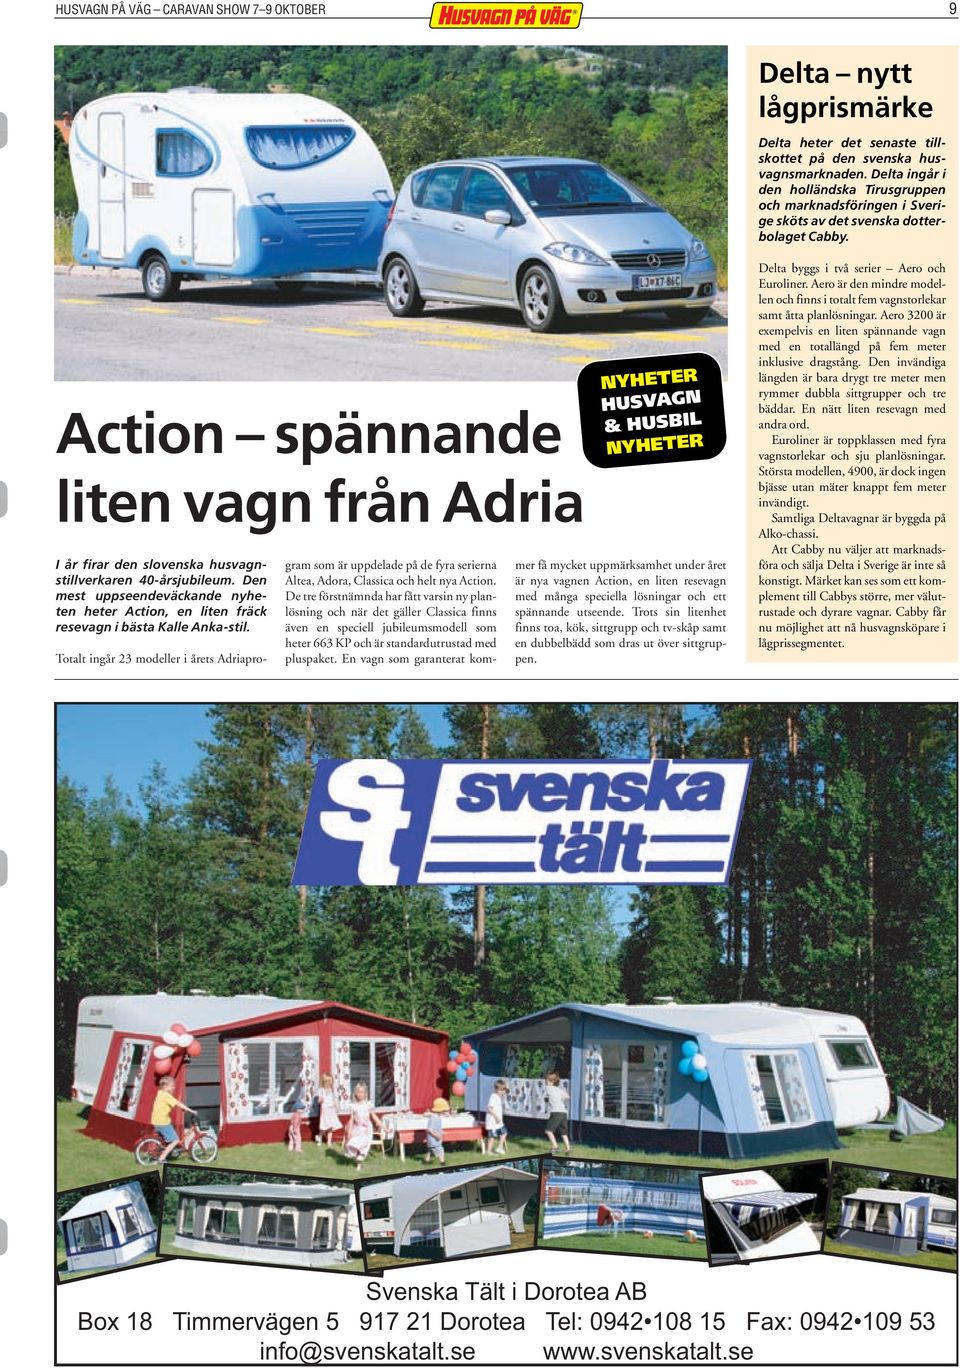 Action spännande liten vagn från Adria I år firar den slovenska husvagnstillverkaren 40-årsjubileum. Den mest uppseendeväckande nyheten heter Action, en liten fräck resevagn i bästa Kalle Anka-stil.